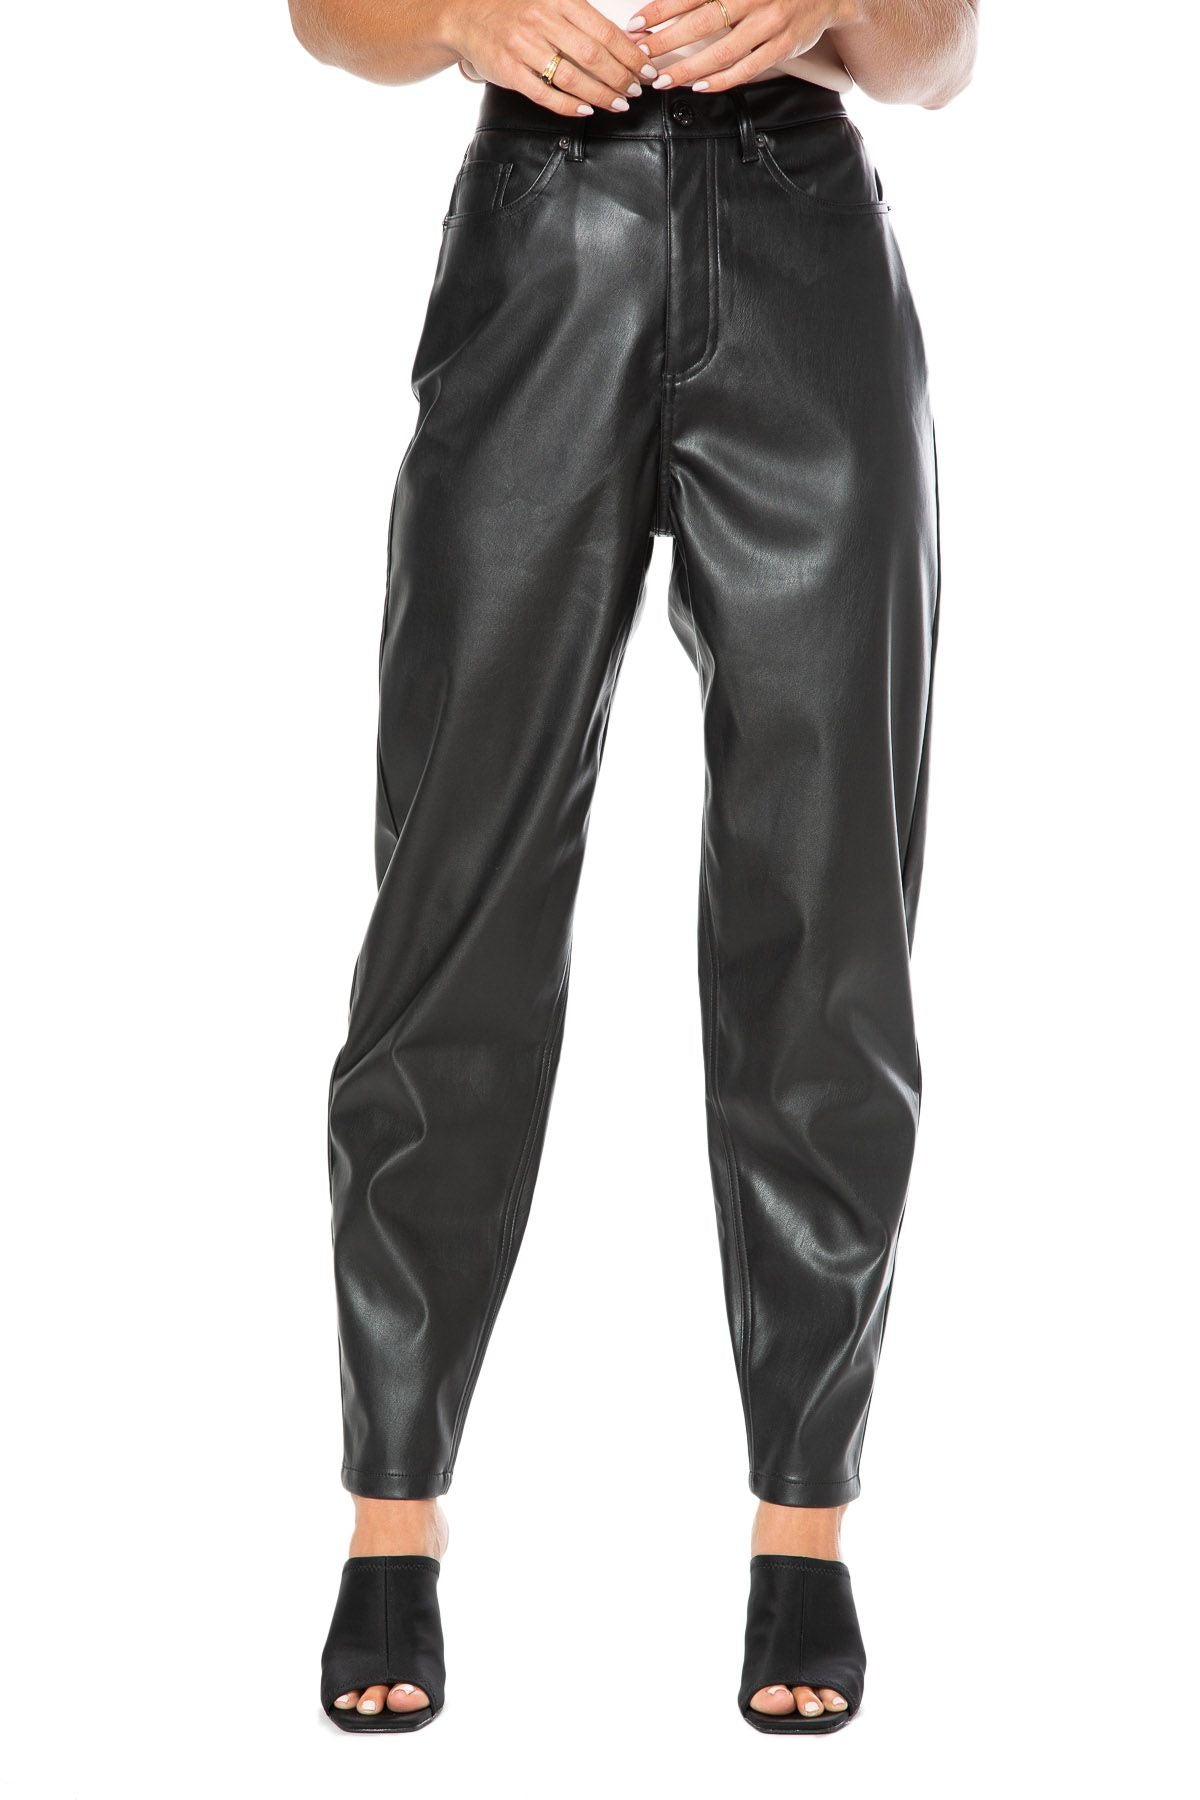 Juicy Couture Faux Leather Rodeo Barrel Leg Pants Black